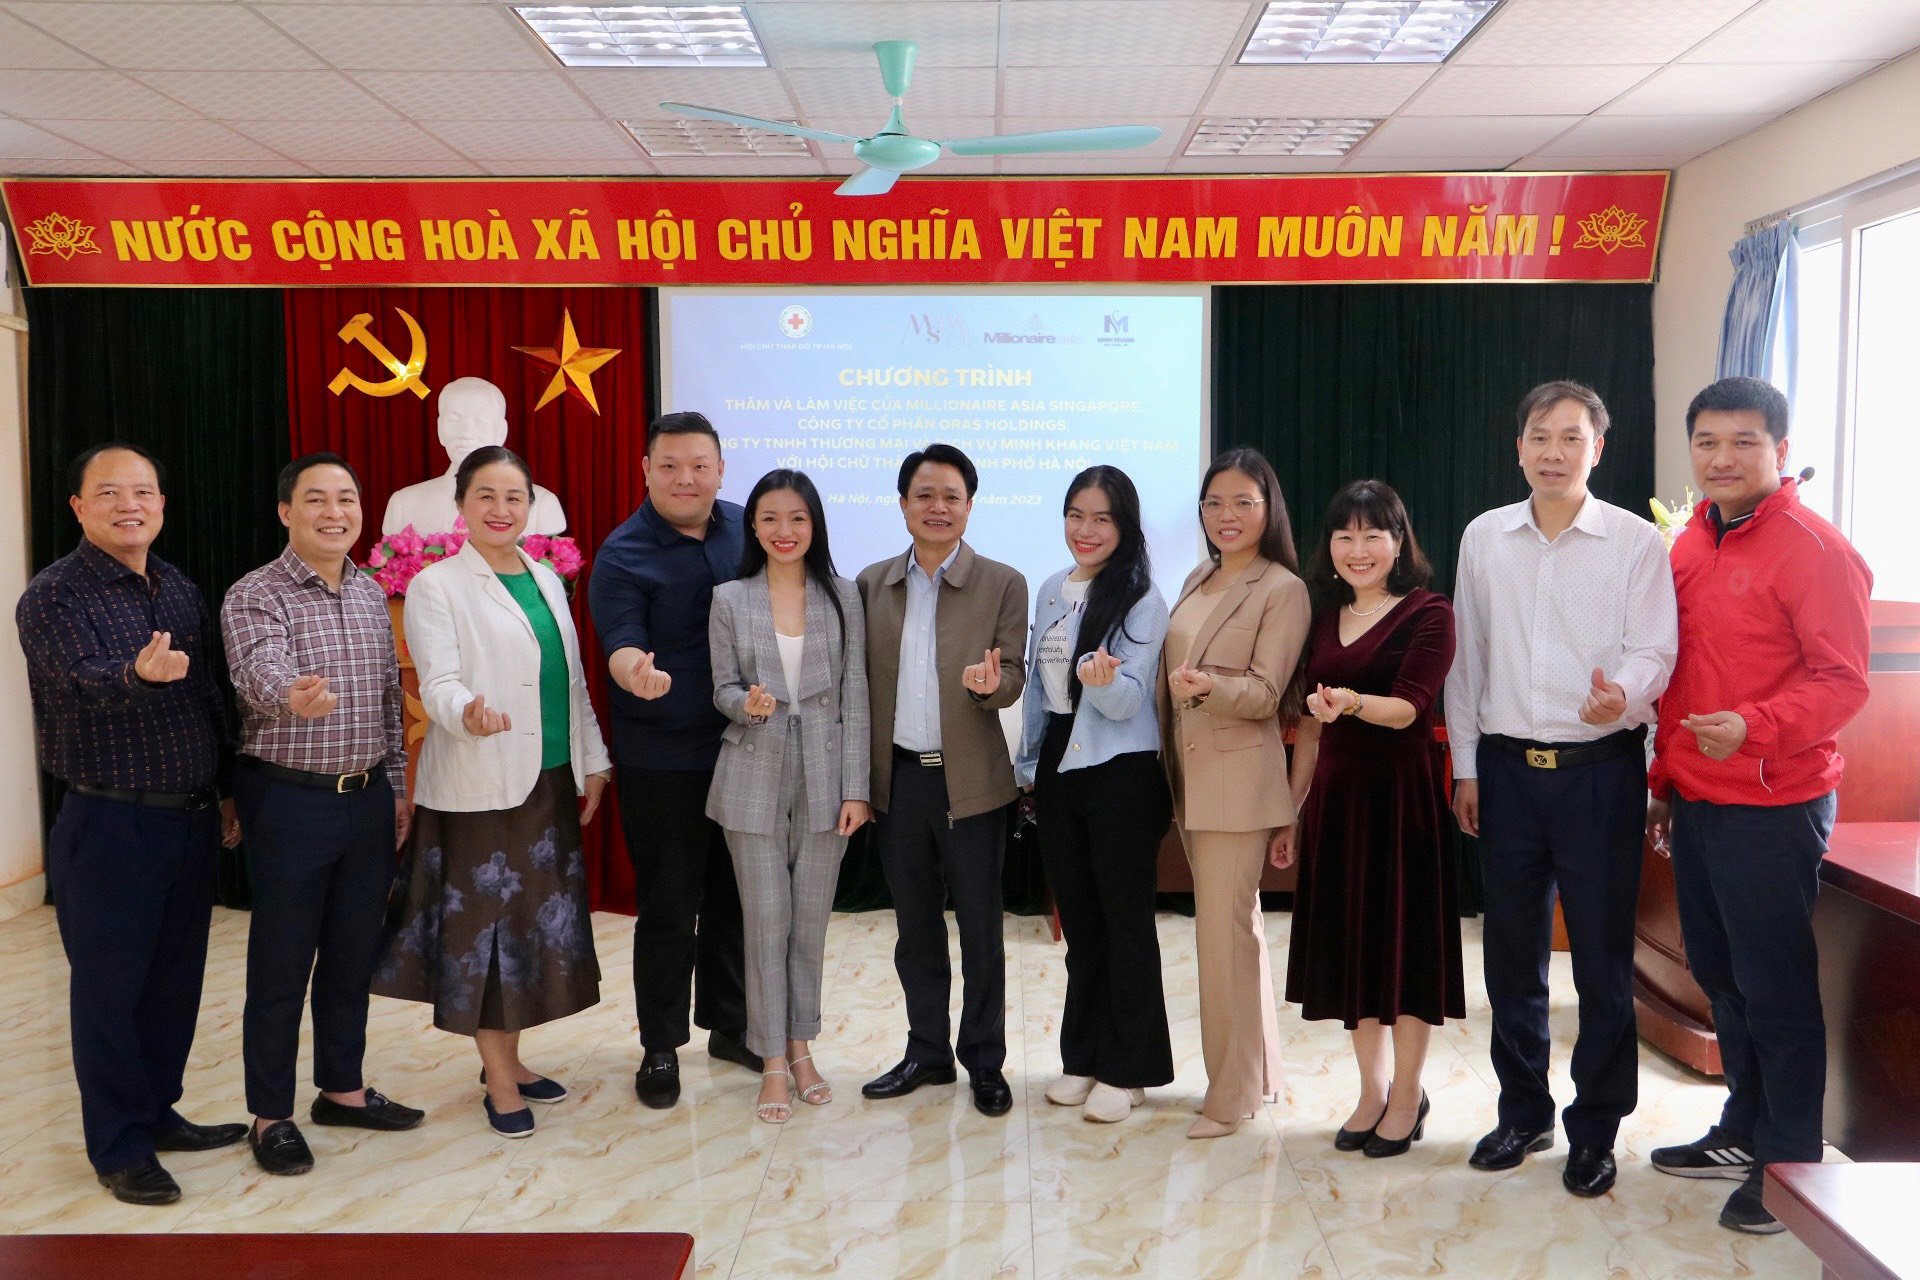 Đoàn tài trợ Milionaire Asia Singapore và các đối tác hoạt động từ thiện tại Hội Chữ thập đỏ Hà Nội - 1